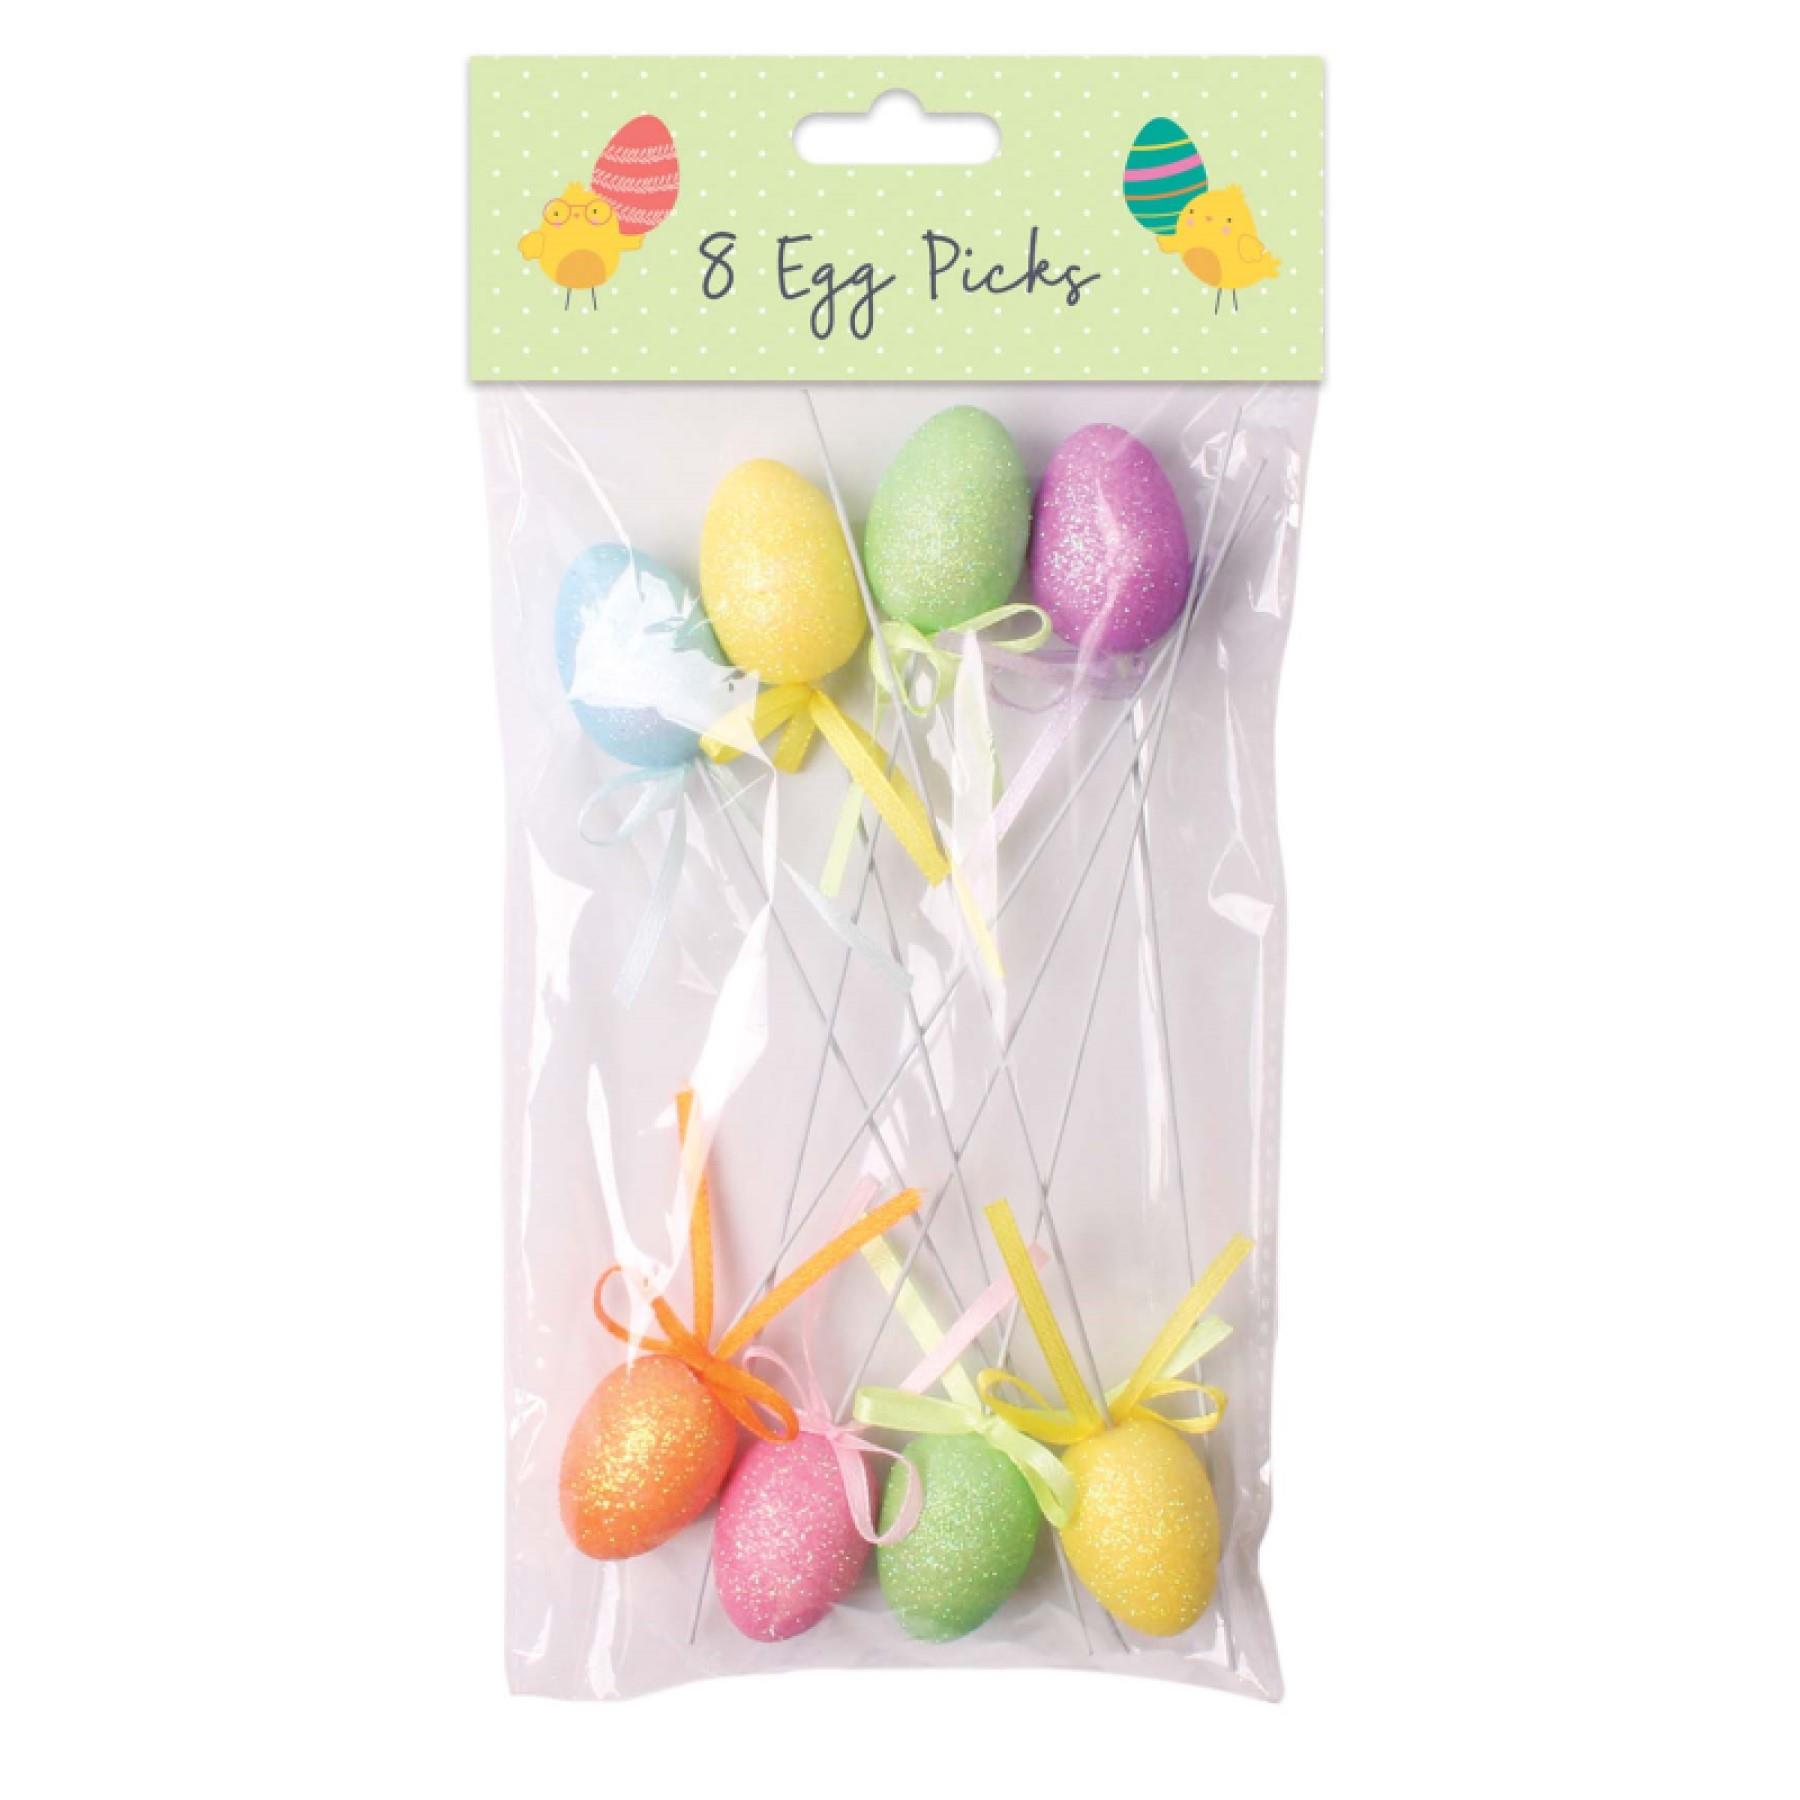 Easter Decorations, Bonnet Arts and Crafts, Egg Hunt - 8 Pack Glitter Egg Pick